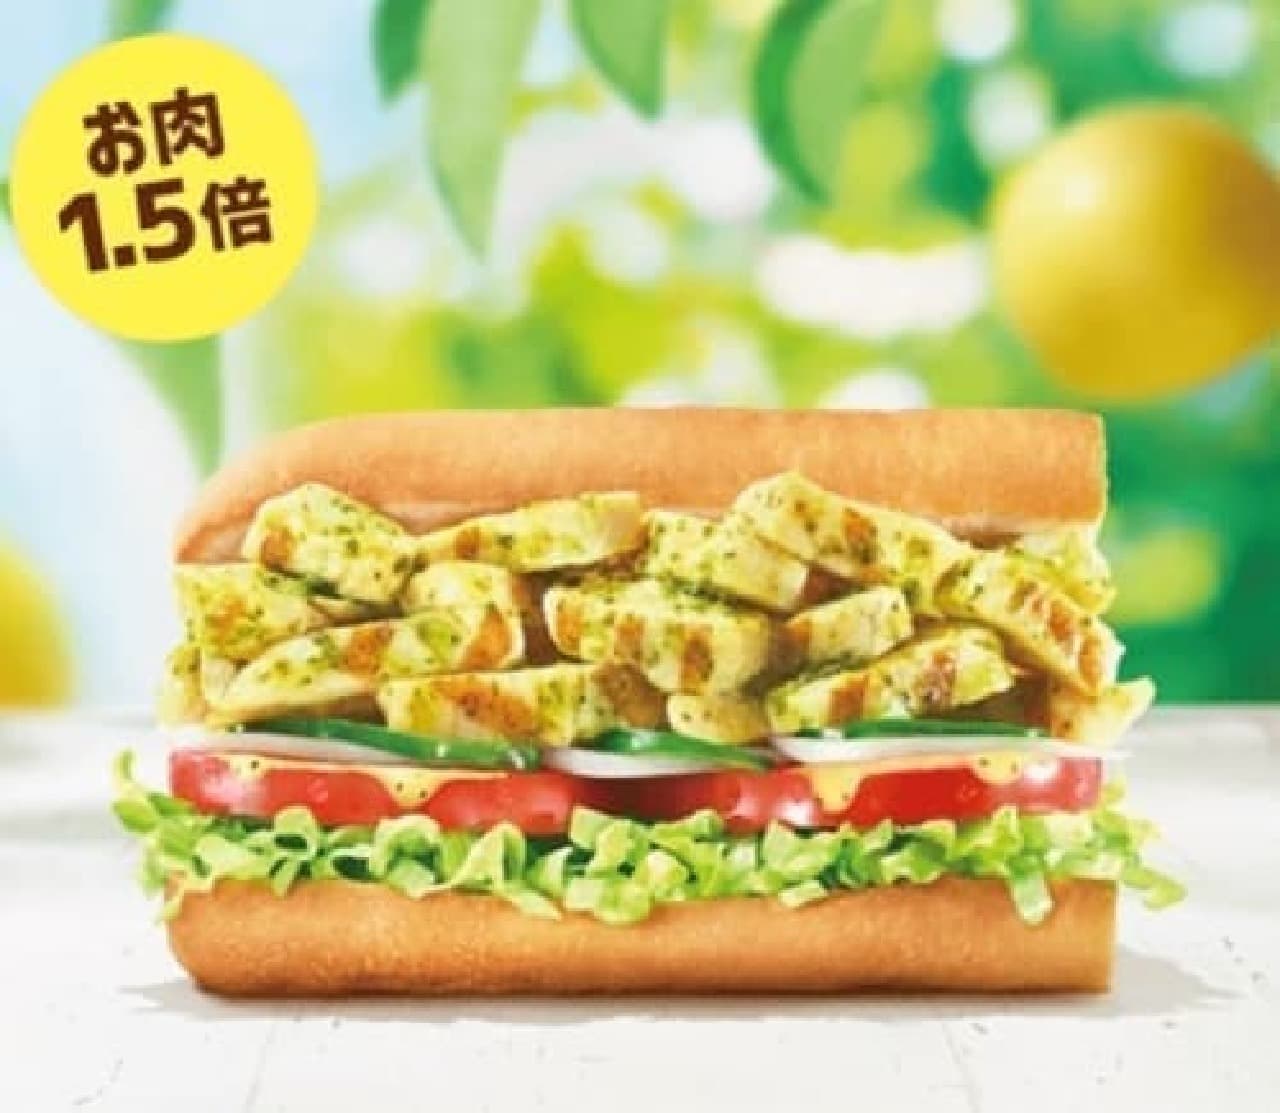 Subway's special "Refreshing salad chicken-Hyuganatsu scented creamy sauce-"